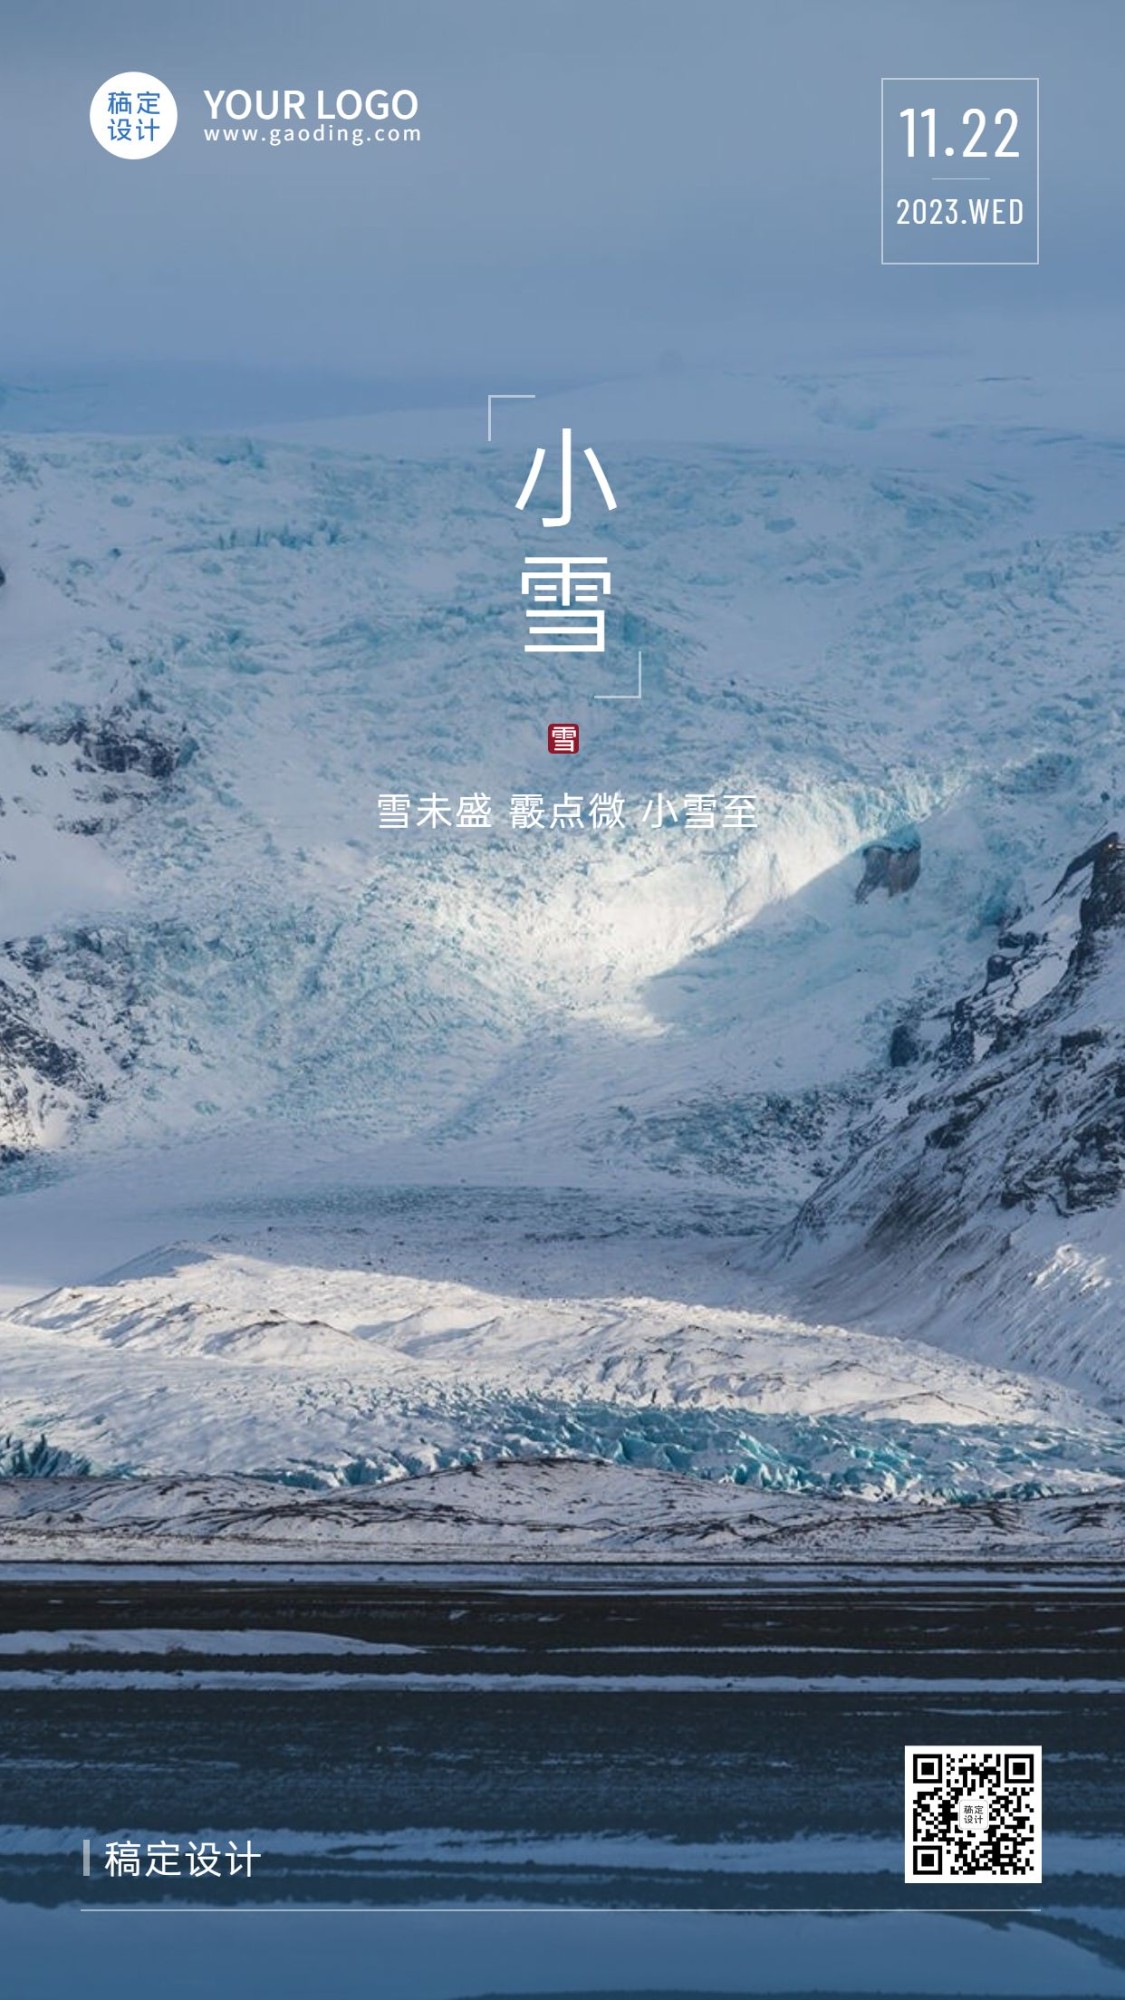 小雪节气祝福问候冬天实景手机海报